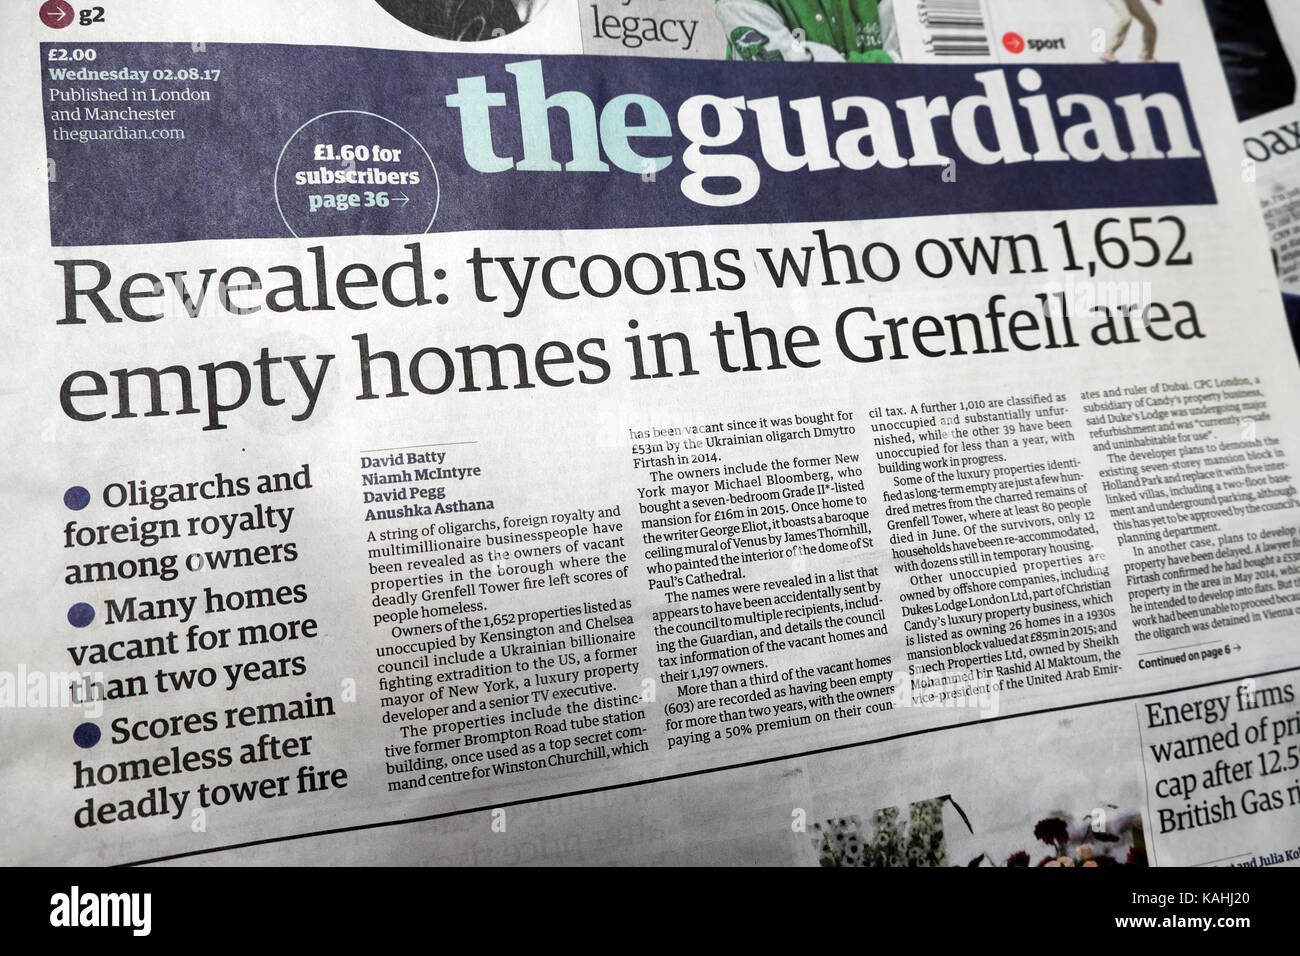 "Ha rivelato: magnati che possiedono 1,652 case vuote nella zona Grenfell' quotidiano Guardian headline 02,08.2017 Foto Stock